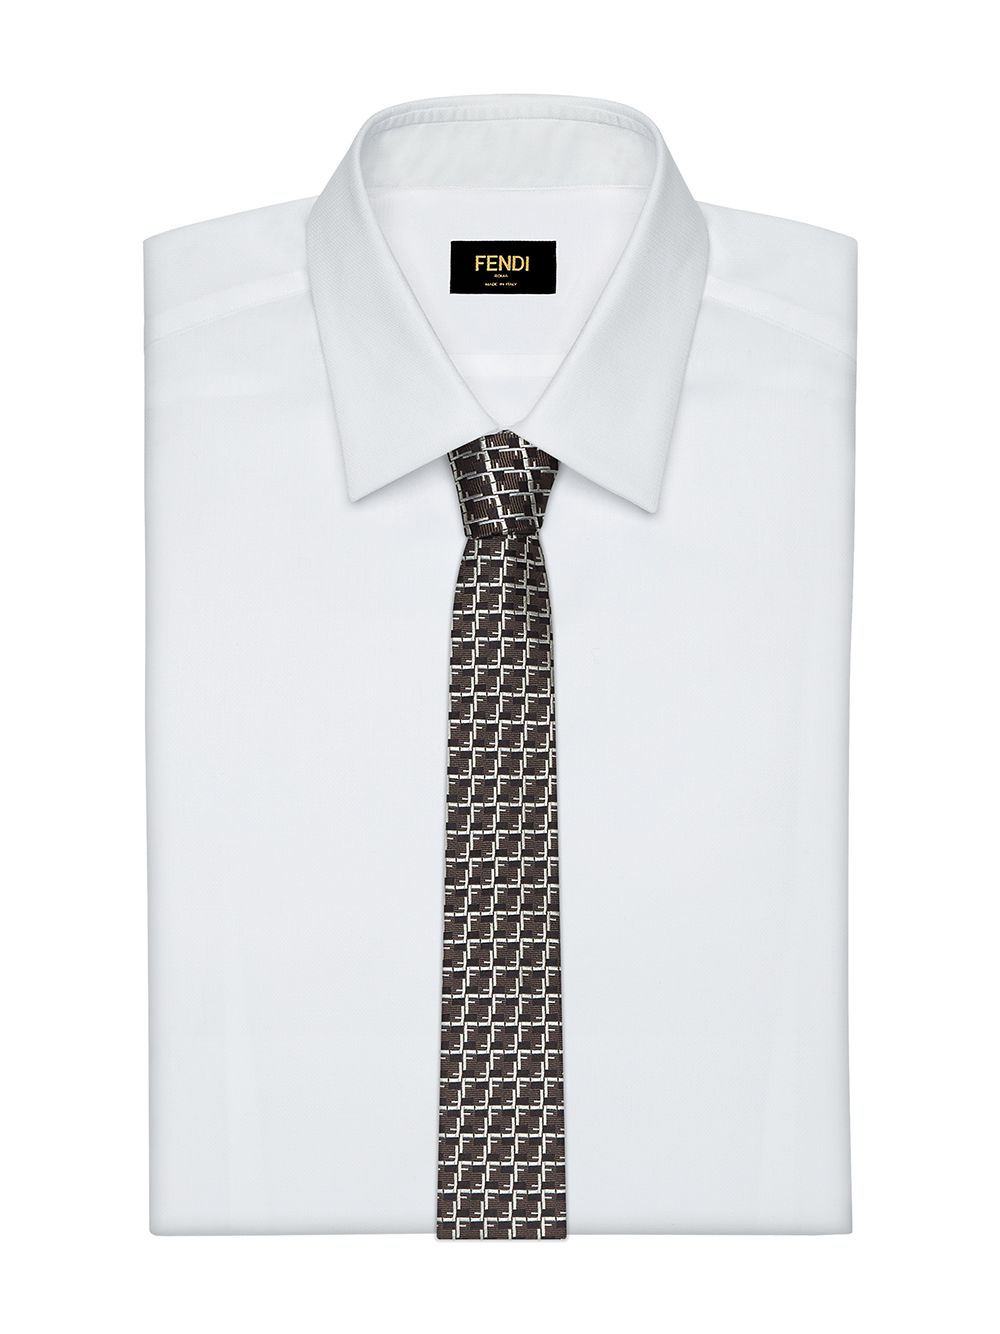 фото Fendi галстук с логотипом ff